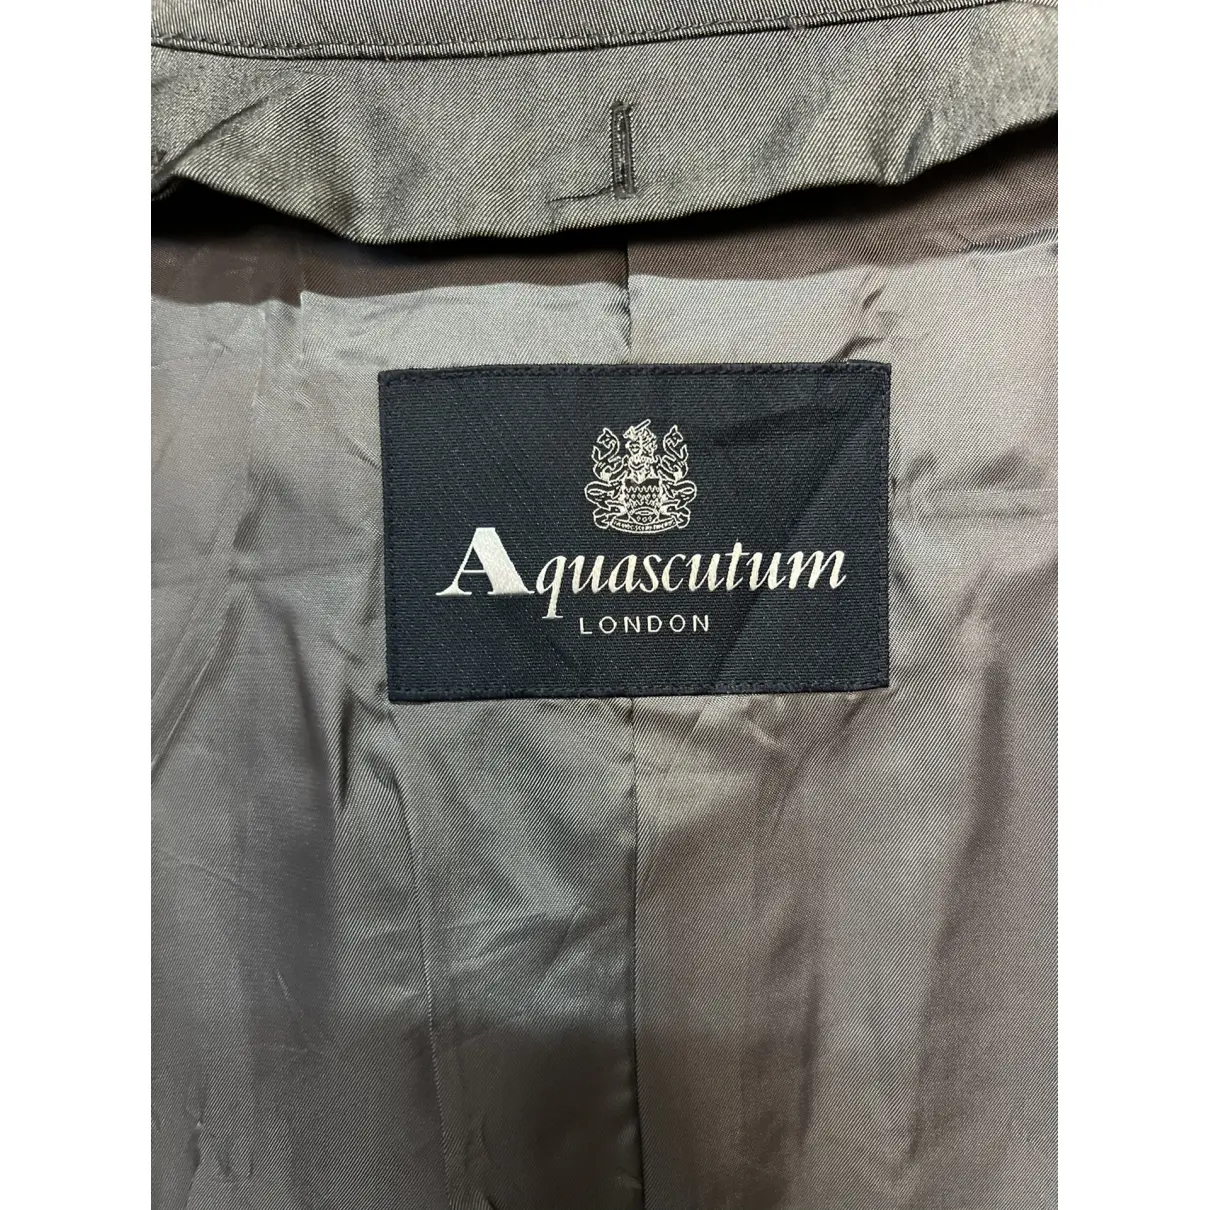 Buy Aquascutum Coat online